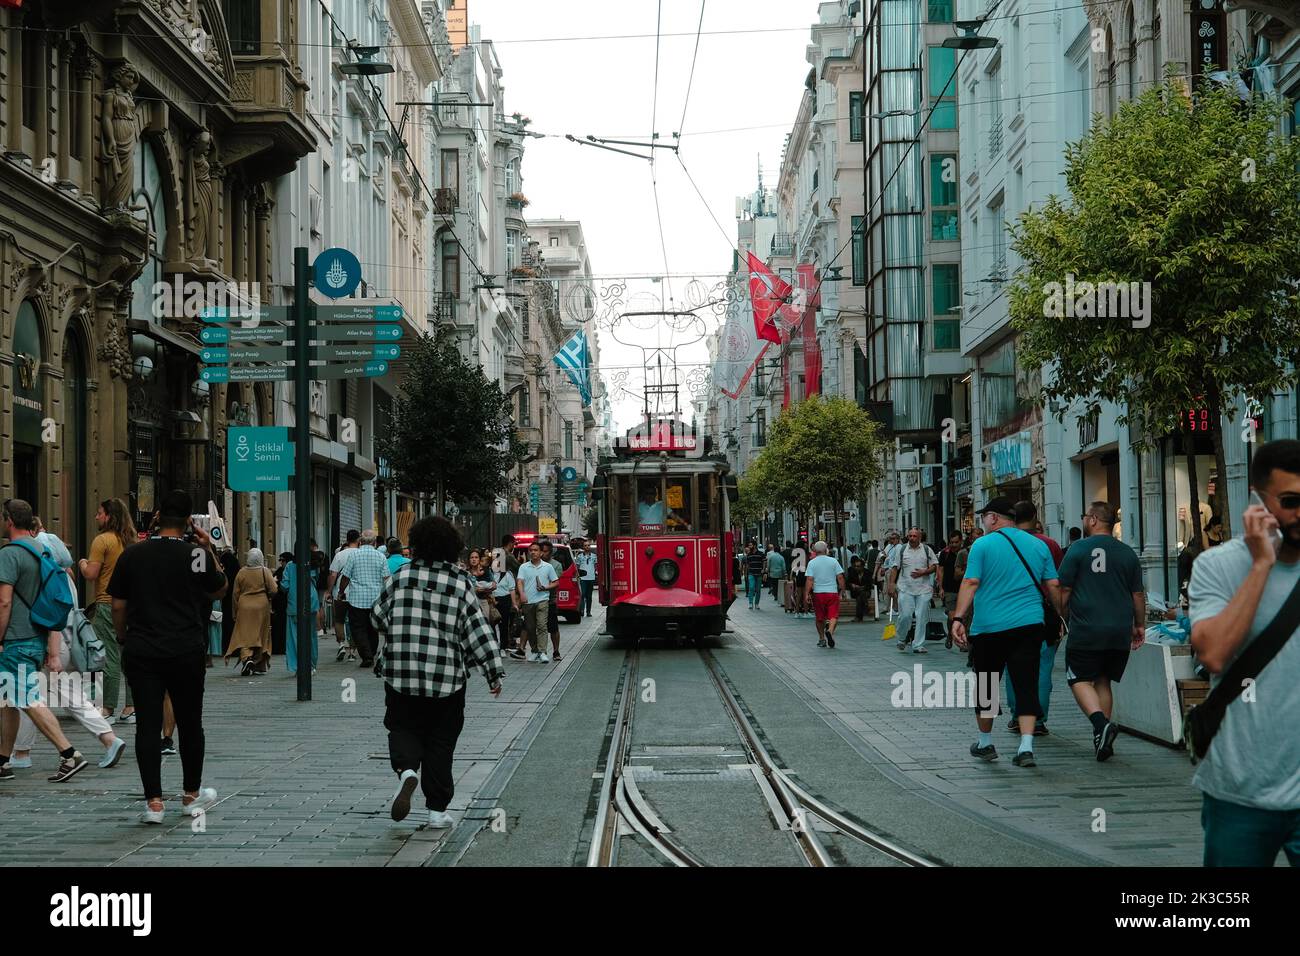 Vue sur la rue Istiklal avec les gens, paysage urbain à Istanbul, vue de face du tram rouge populaire, rue rétro avec des gens à pied, vieux train va dans la foule Banque D'Images